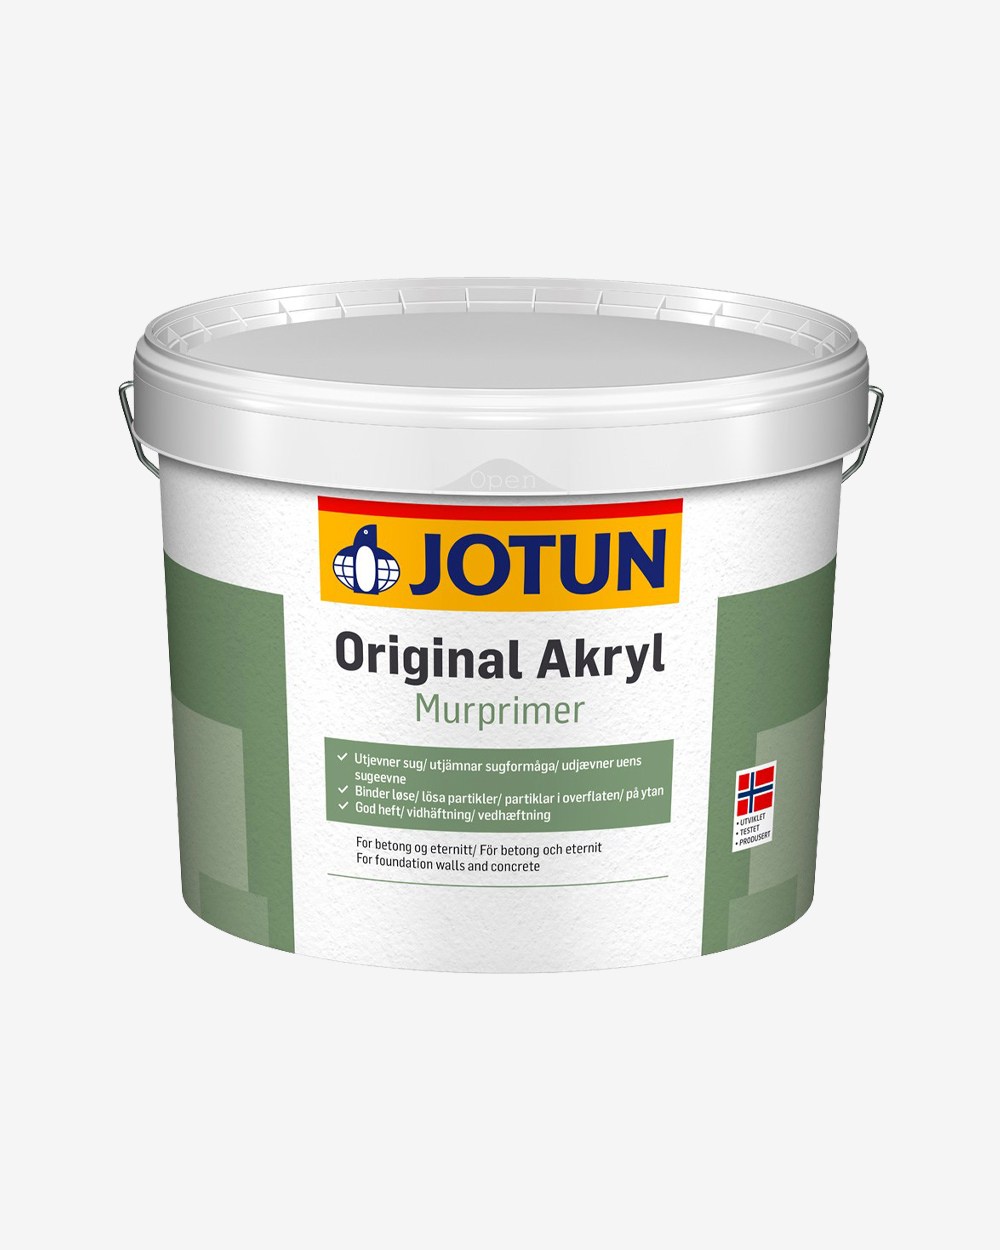 Se Jotun Original Akryl Murprimer - 3 L hos Picment.dk